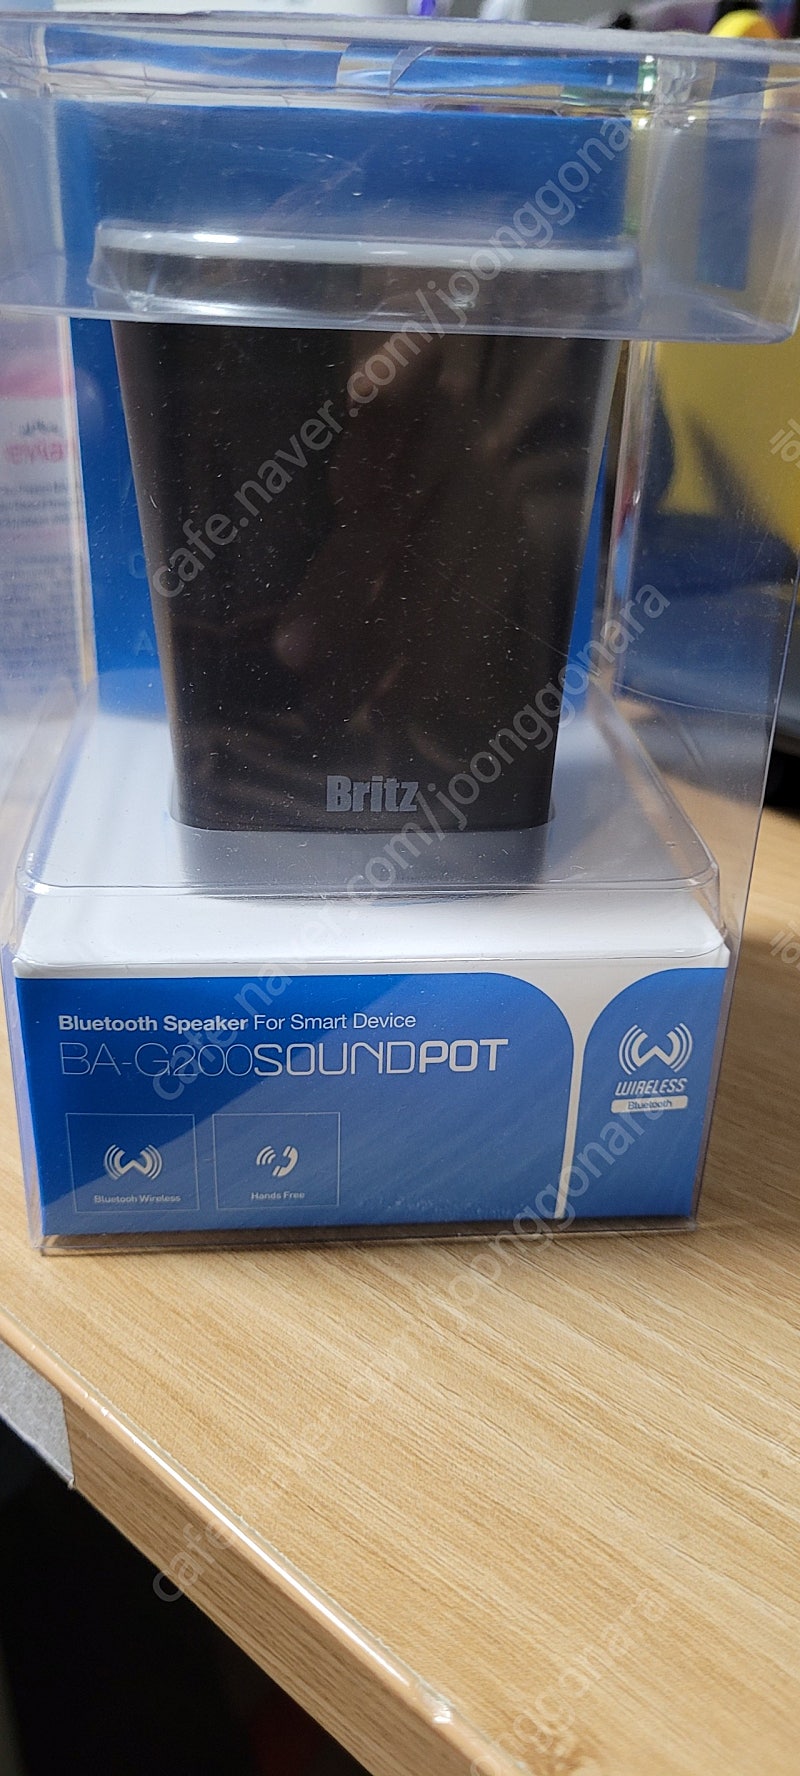 블루투스 스피커 Britz BA-G200 soundpot 새제품